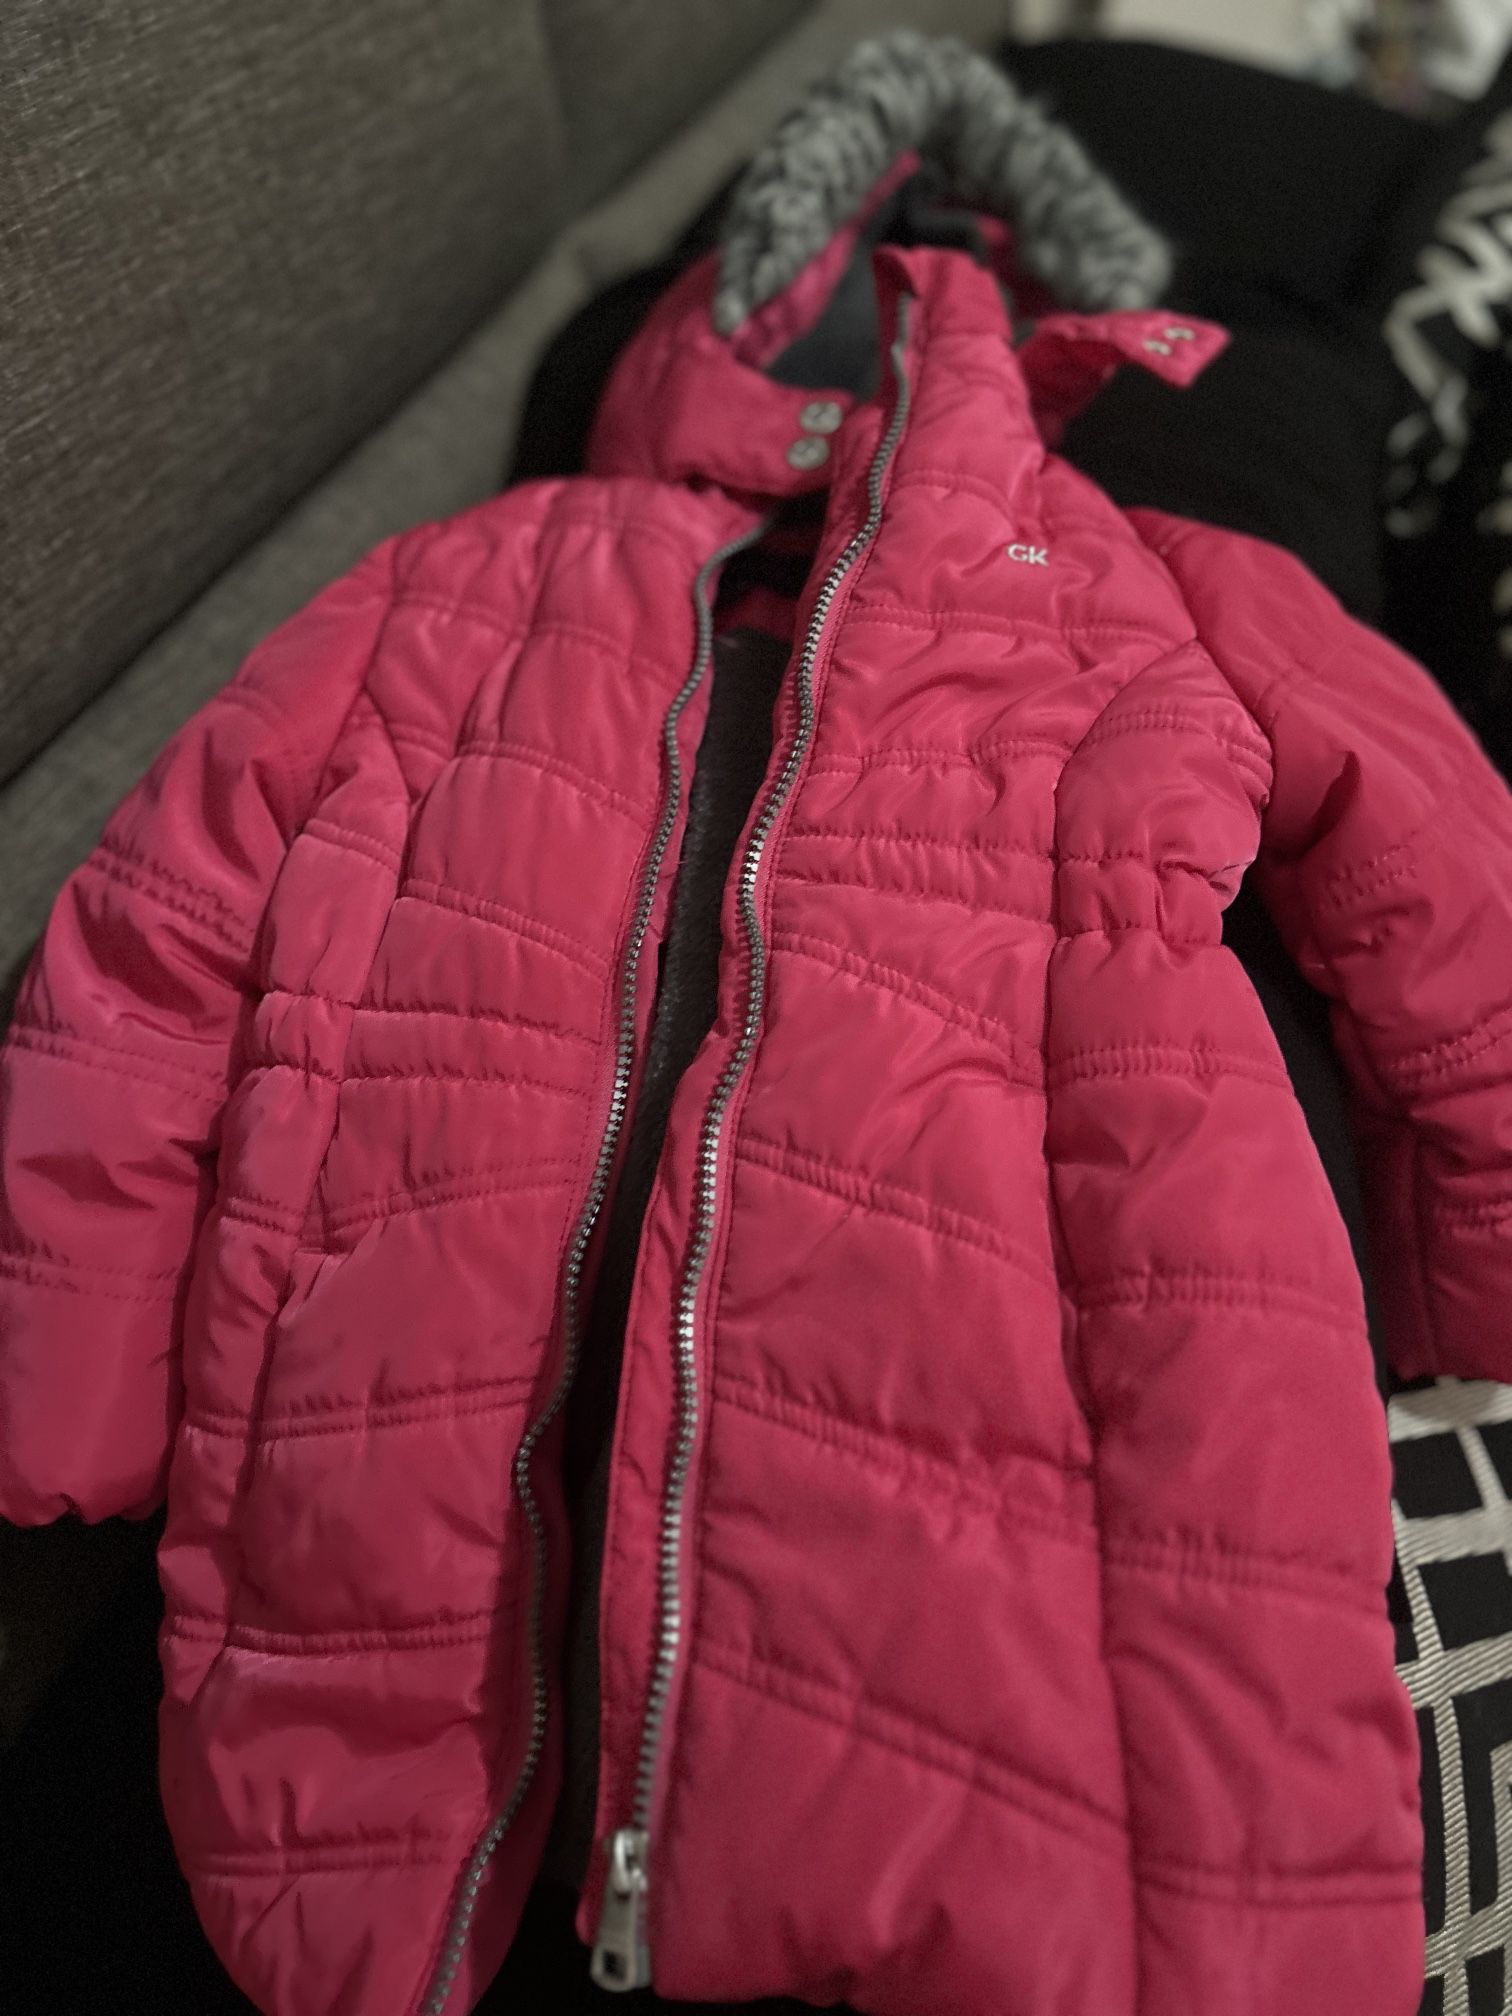 Toddler Winter Jacket